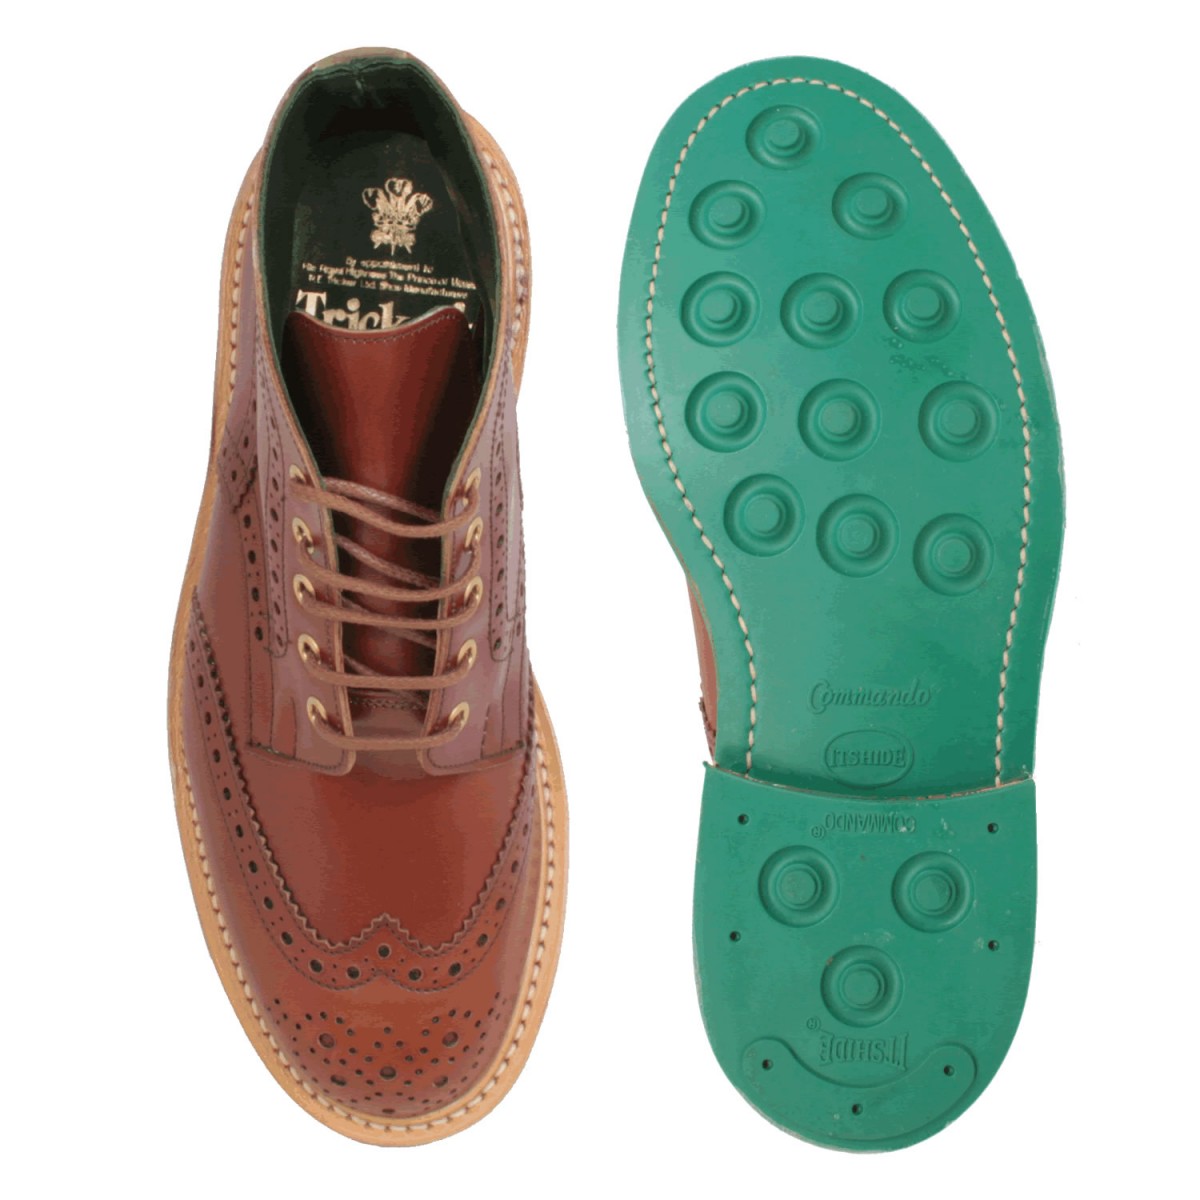 Trickers Windermere - Pediwear Footwear